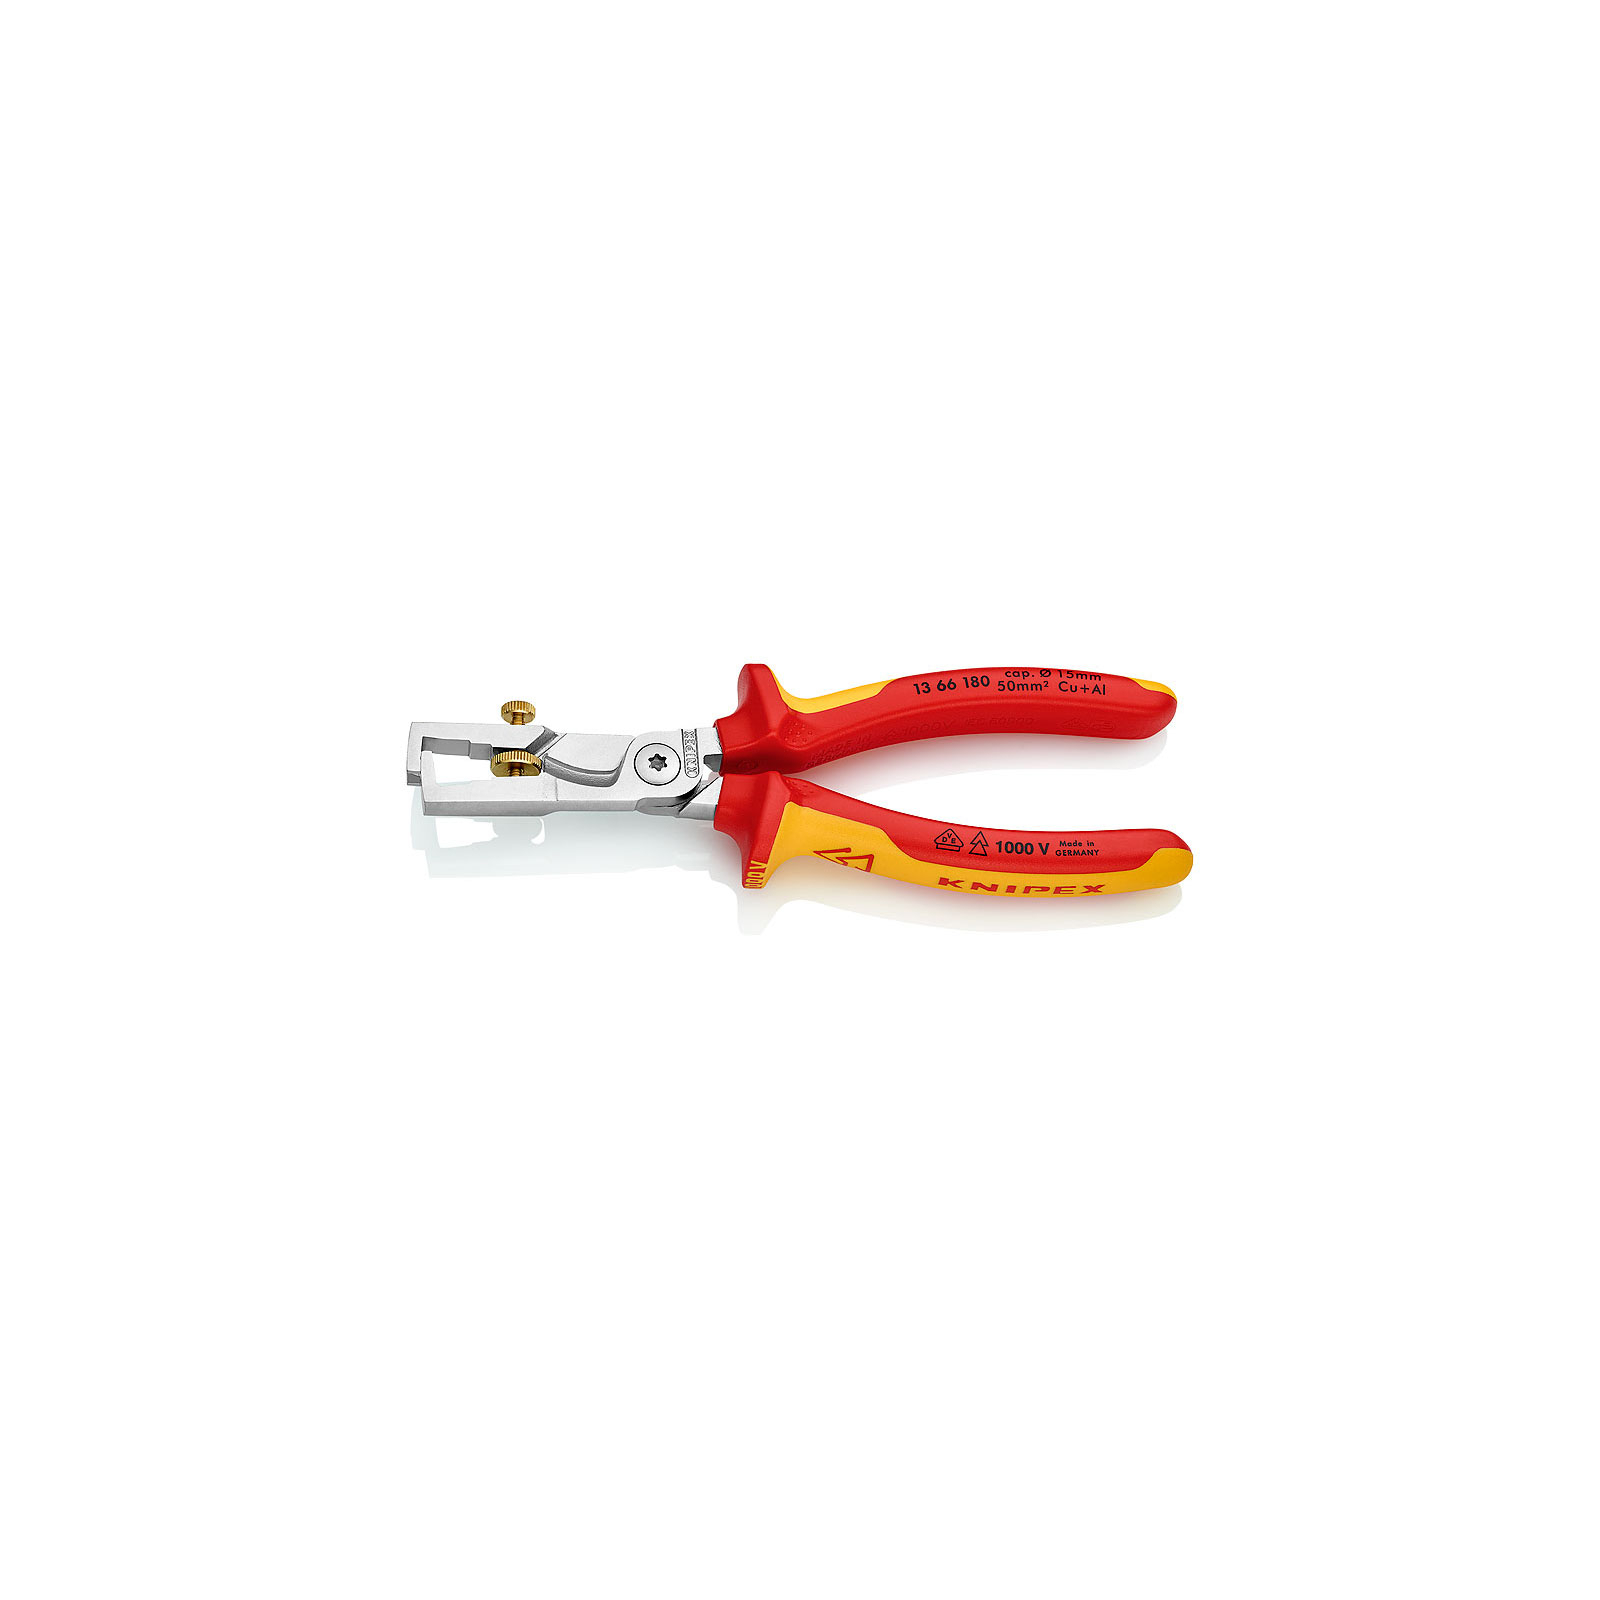 Съемник изоляции KNIPEX StriX с функцией резки кабеля (13 66 180)